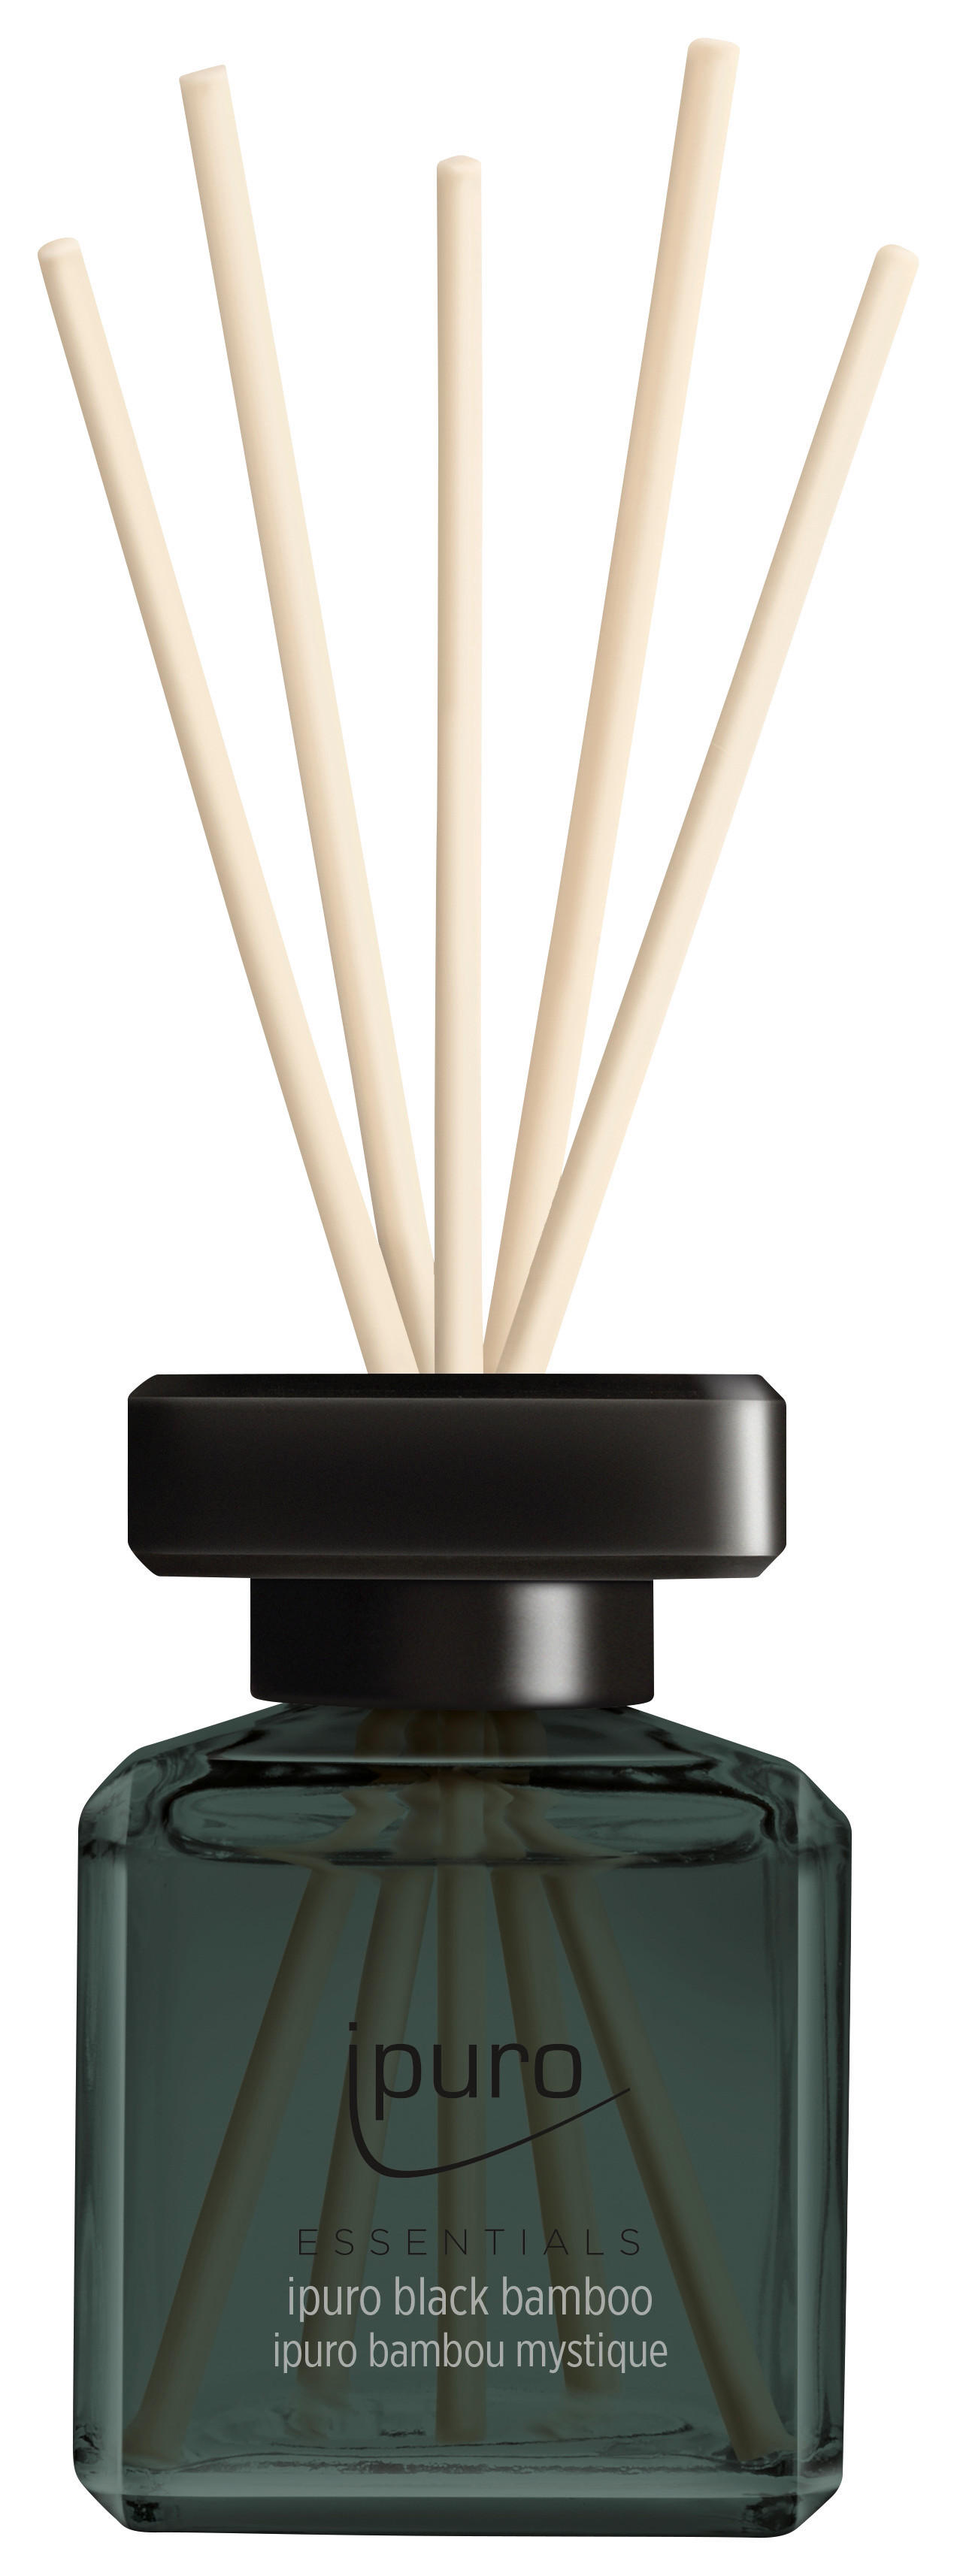 ipuro Raumduft Scent Plug Black Bamboo online bestellen